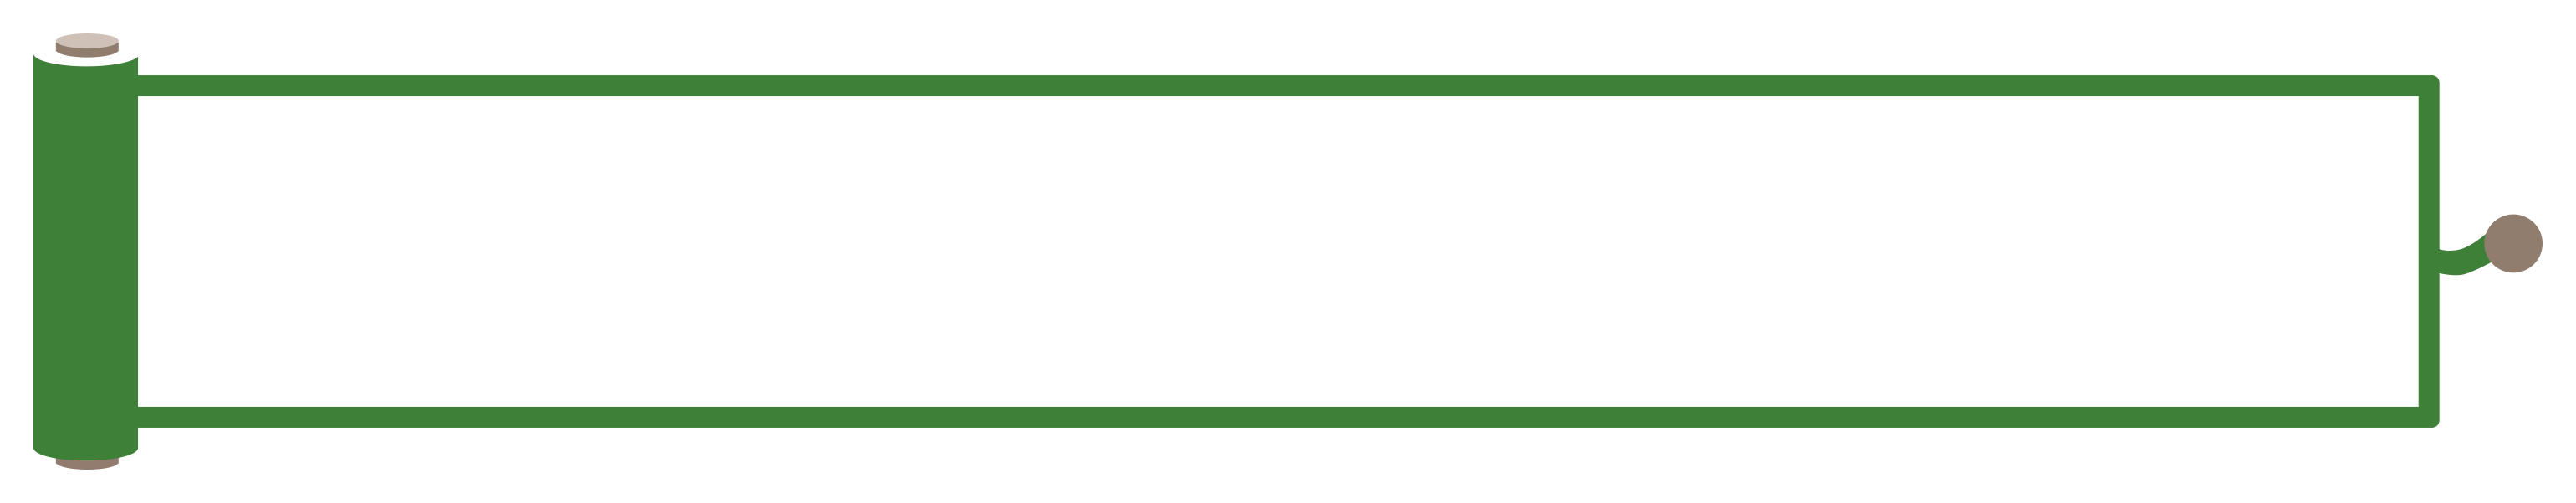 緑色のチェックアイコンの縦長ボトムテロップのイラスト Onwaイラスト